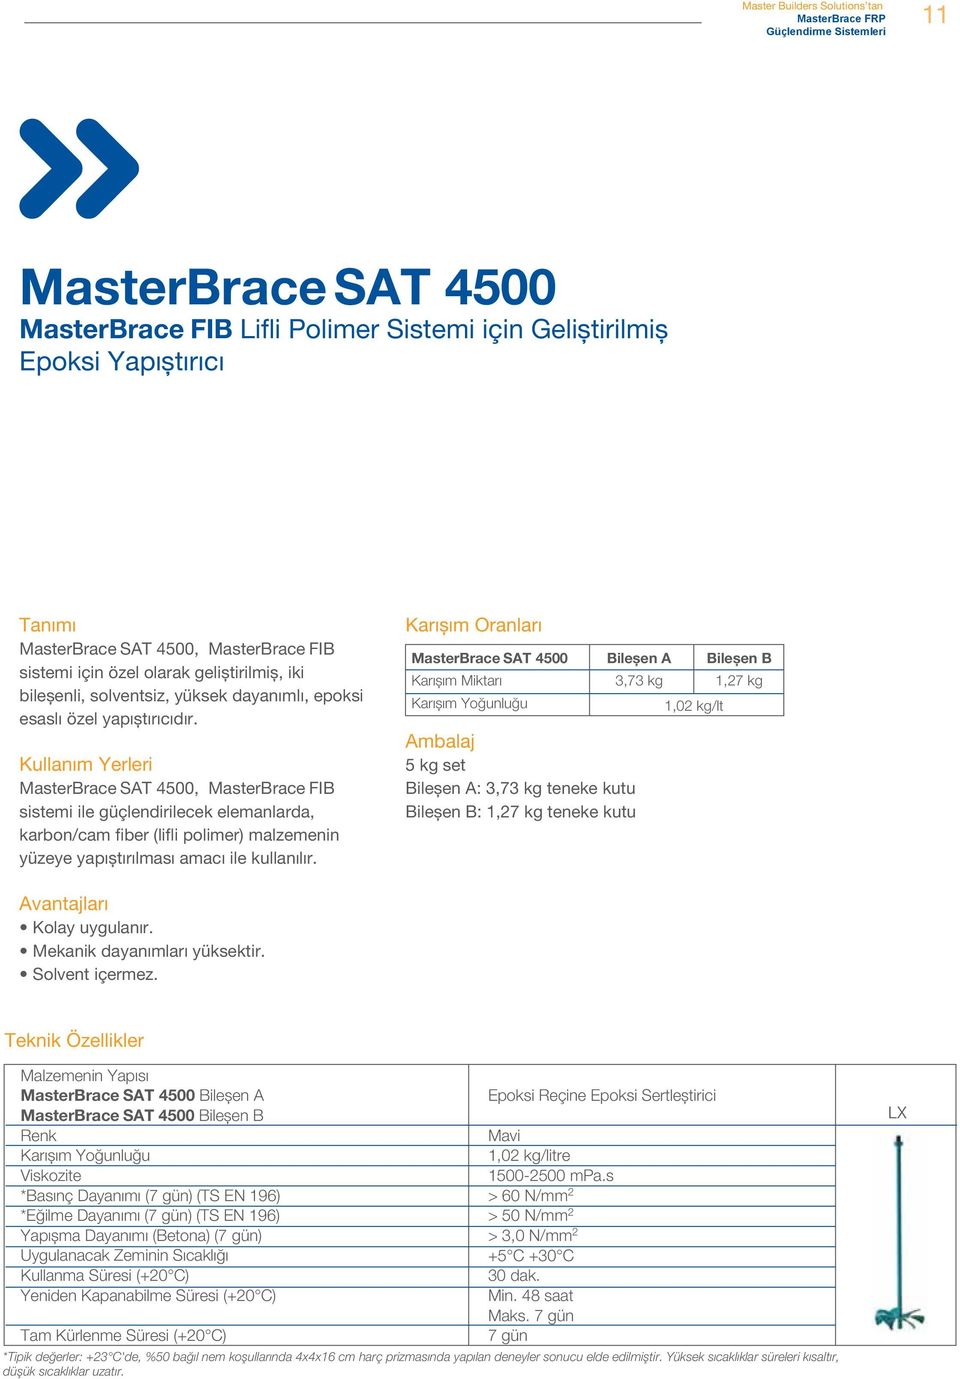 MasterBrace SAT 4500, MasterBrace FIB sistemi ile güçlendirilecek elemanlarda, karbon/cam fiber (lifli polimer) malzemenin yüzeye yapıștırılması amacı ile kullanılır.